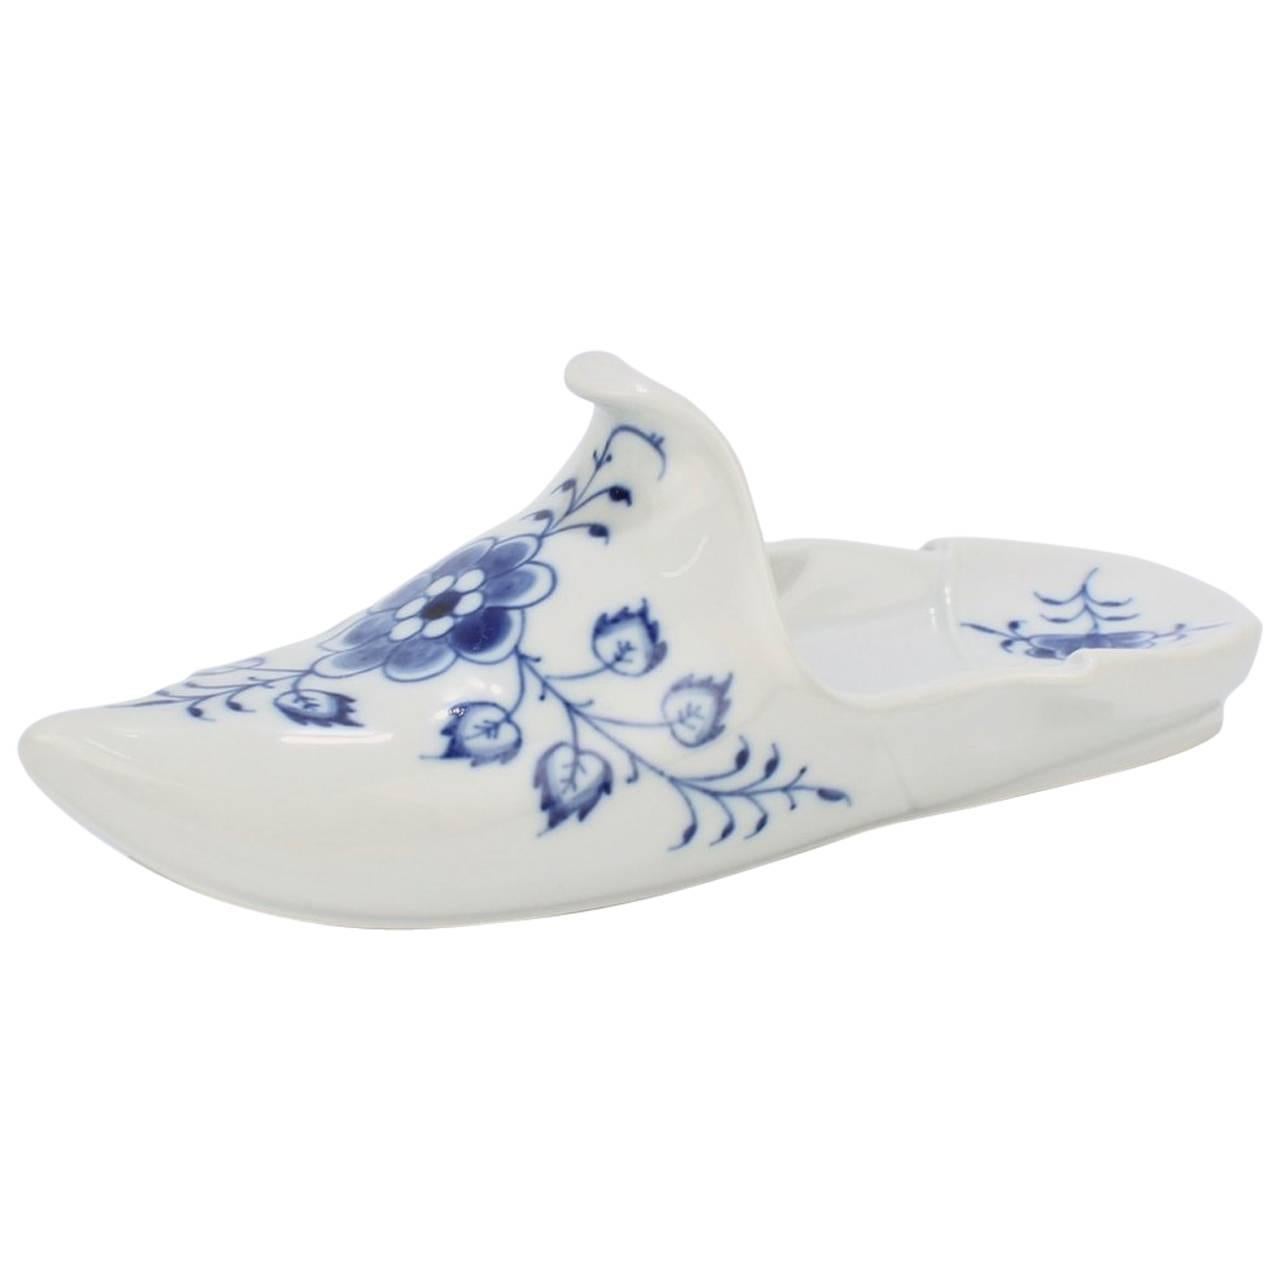 Presse-papier pour chaussures ou pantoufles en porcelaine de Meissen bleu à motif d'oignons